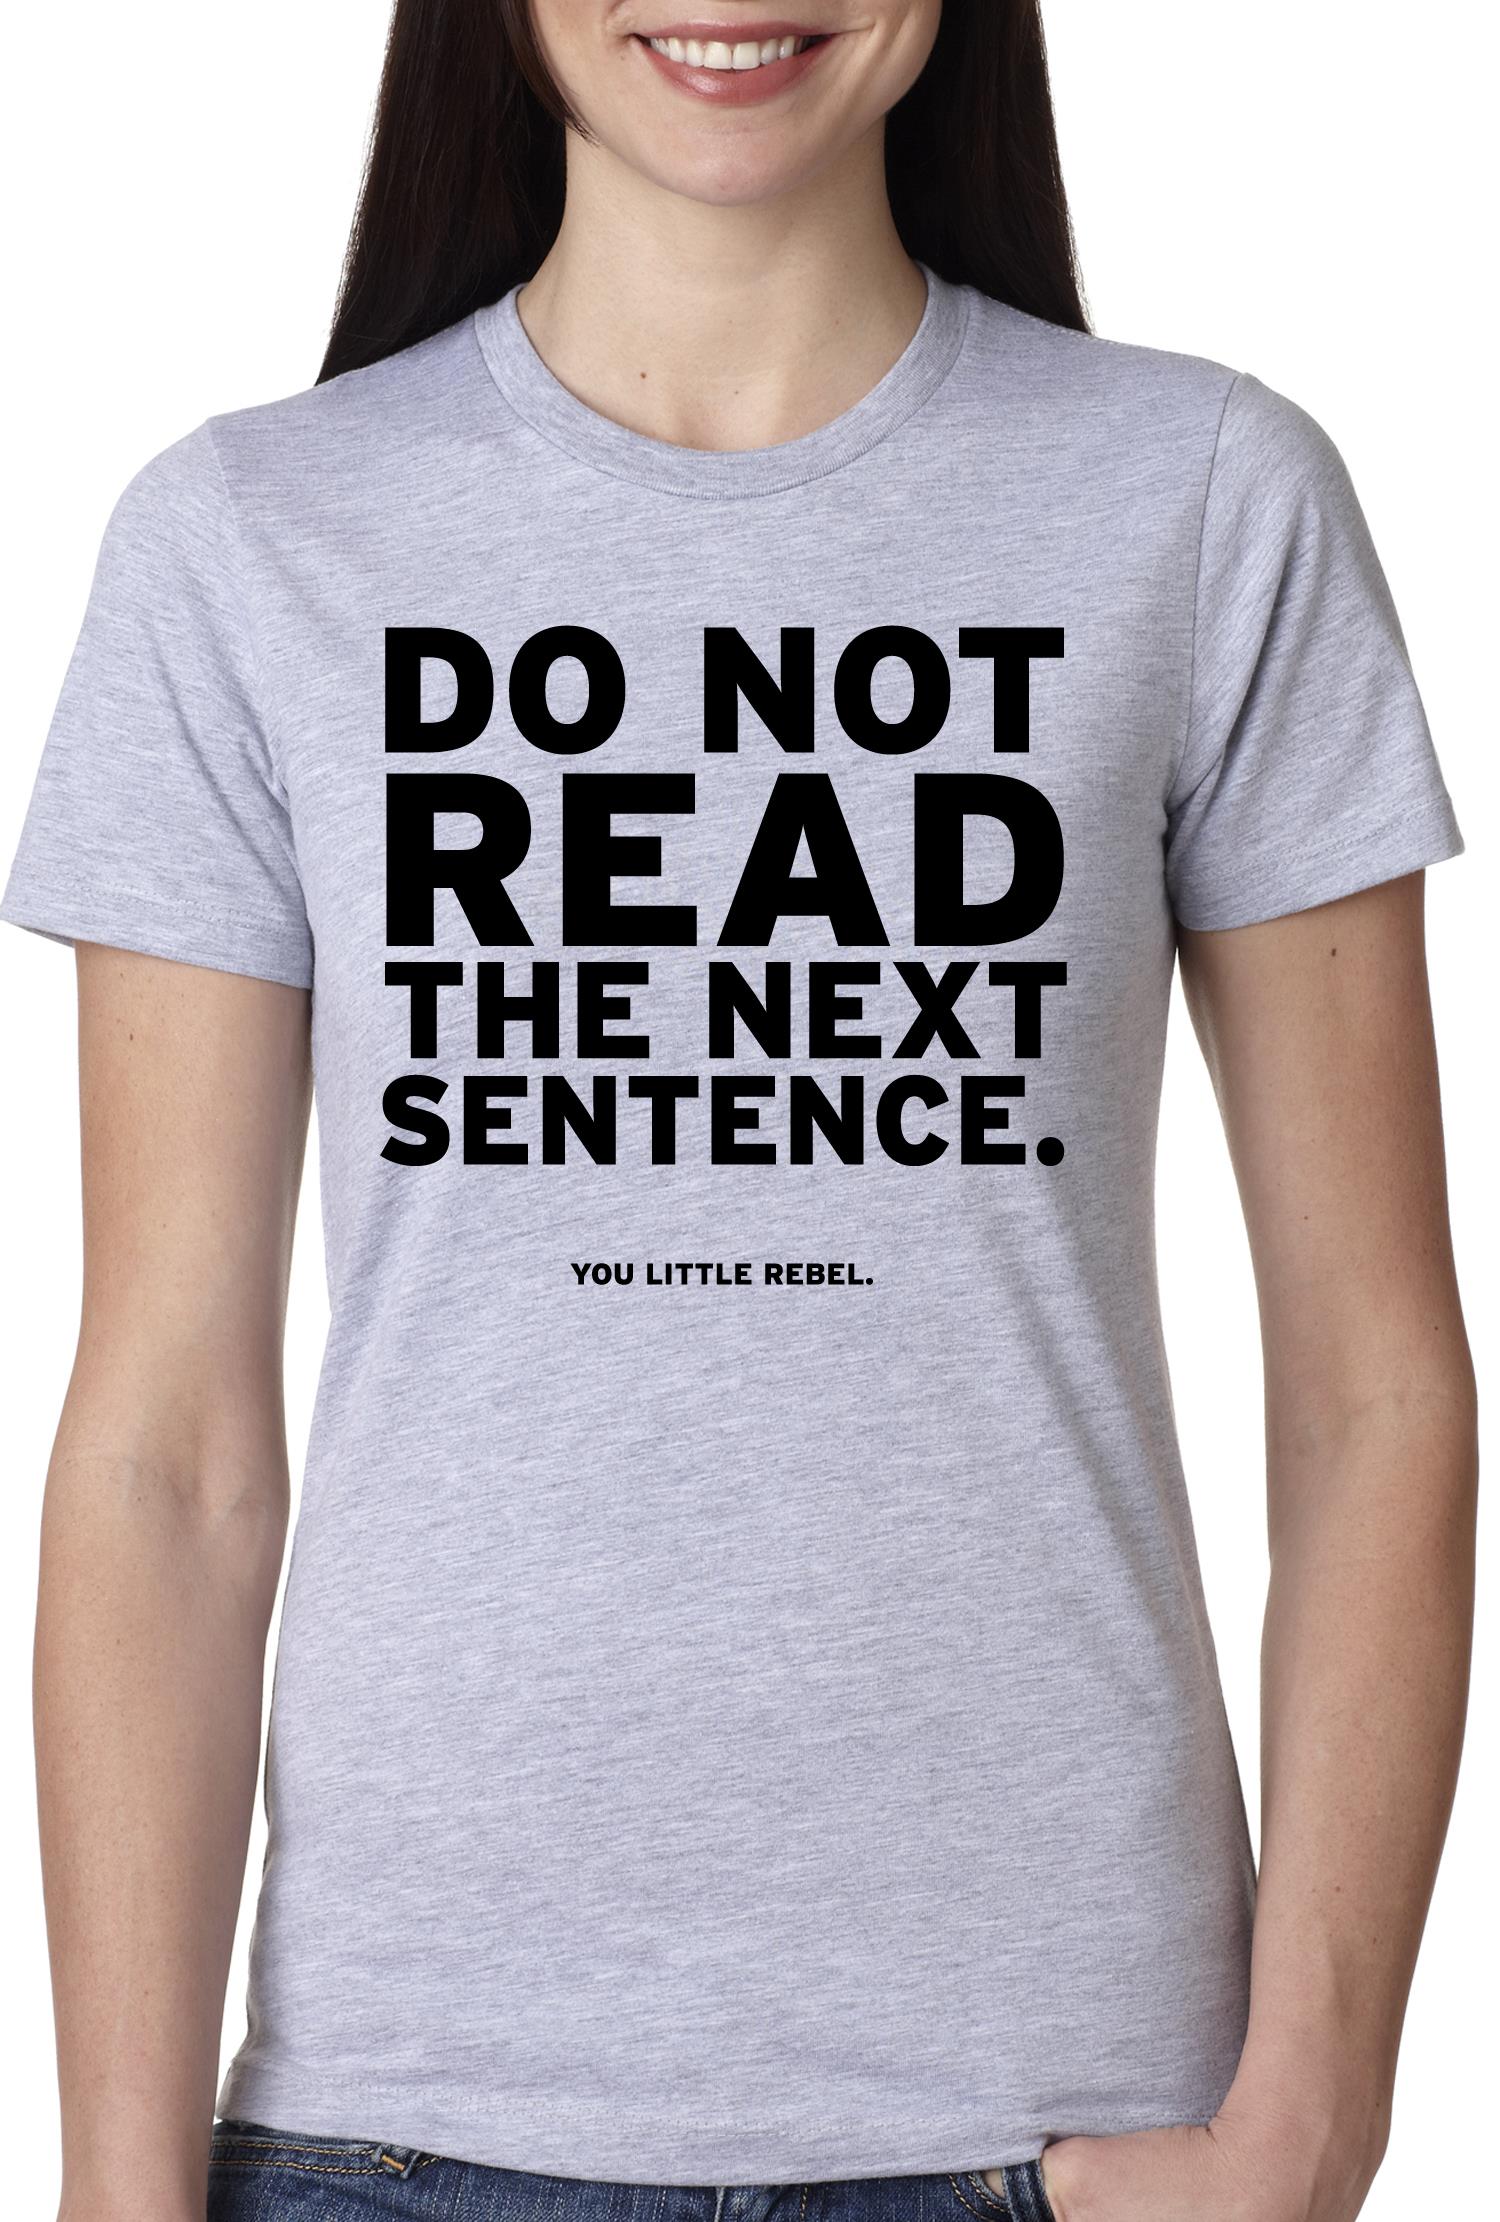 Women's Do Not Read The Next Sentence T Shirt Funny English Shirt For Women M